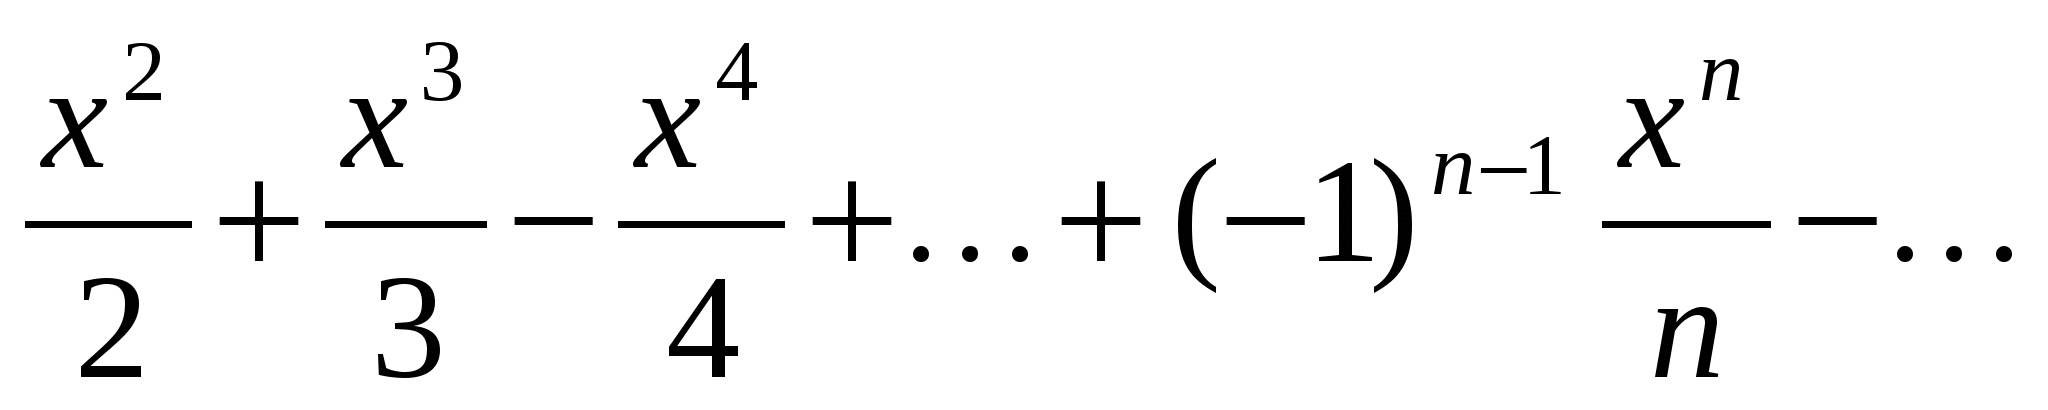 Тейлор 1 1 x. Ряд Маклорена sin x^2. Разложение в ряд Маклорена sin^2(x). Разложить в ряд Маклорена функцию sin(x)^2. Ряд Тейлора для натурального логарифма.